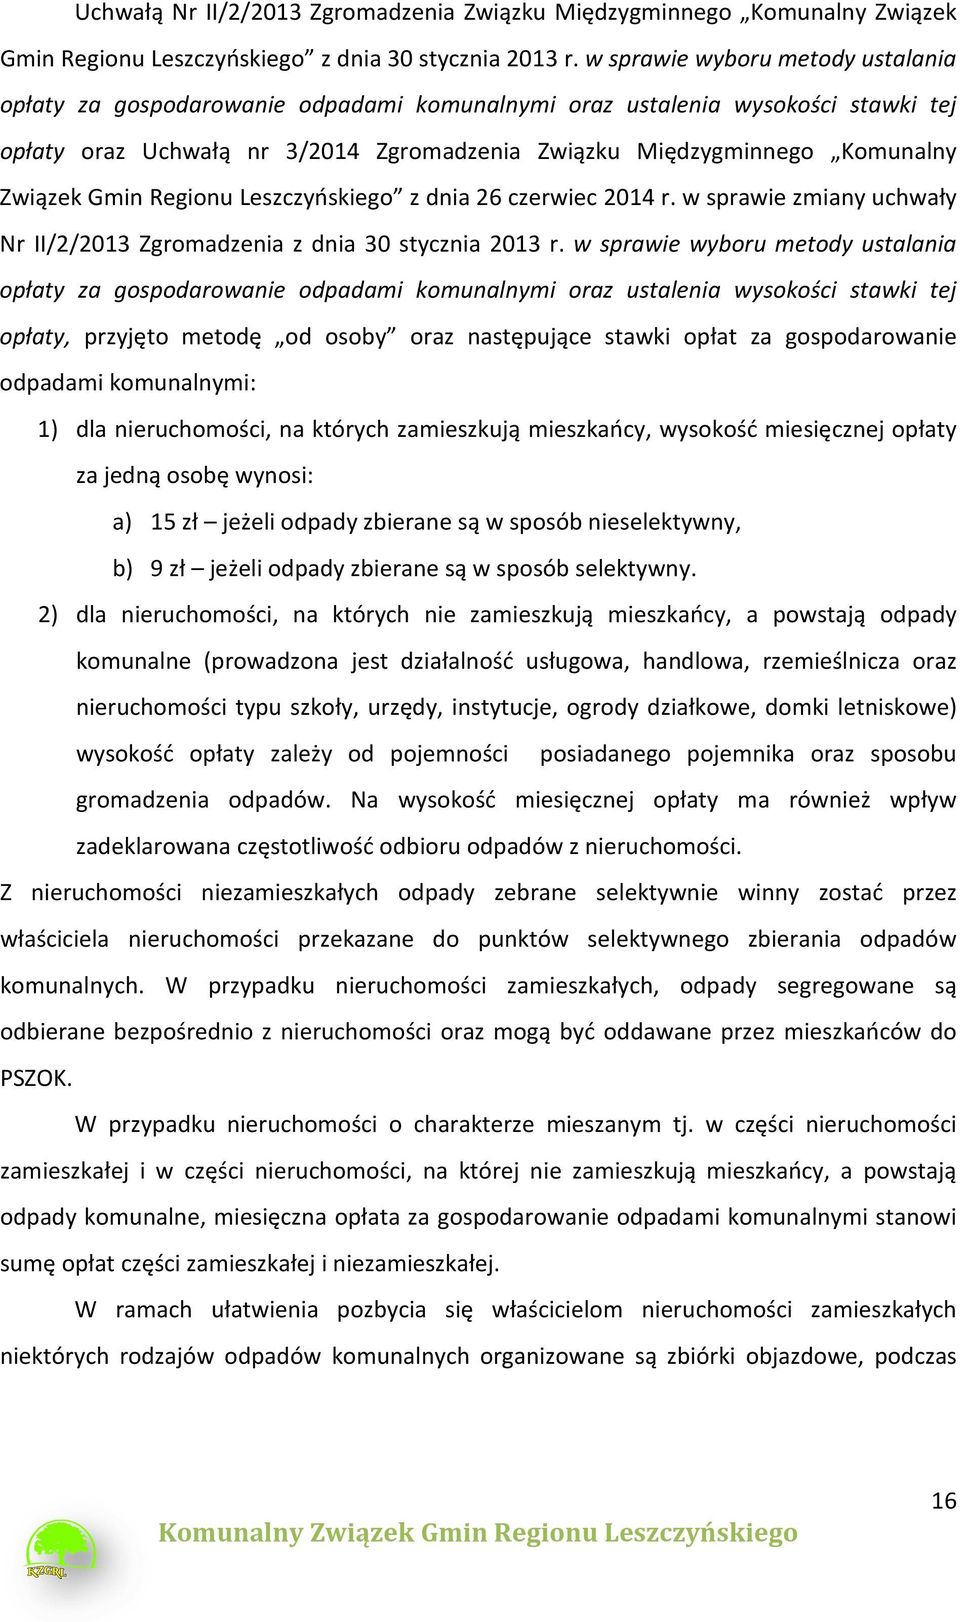 Gmin Regionu Leszczyńskiego z dnia 26 czerwiec 2014 r. w sprawie zmiany uchwały Nr II/2/2013 Zgromadzenia z dnia 30 stycznia 2013 r.